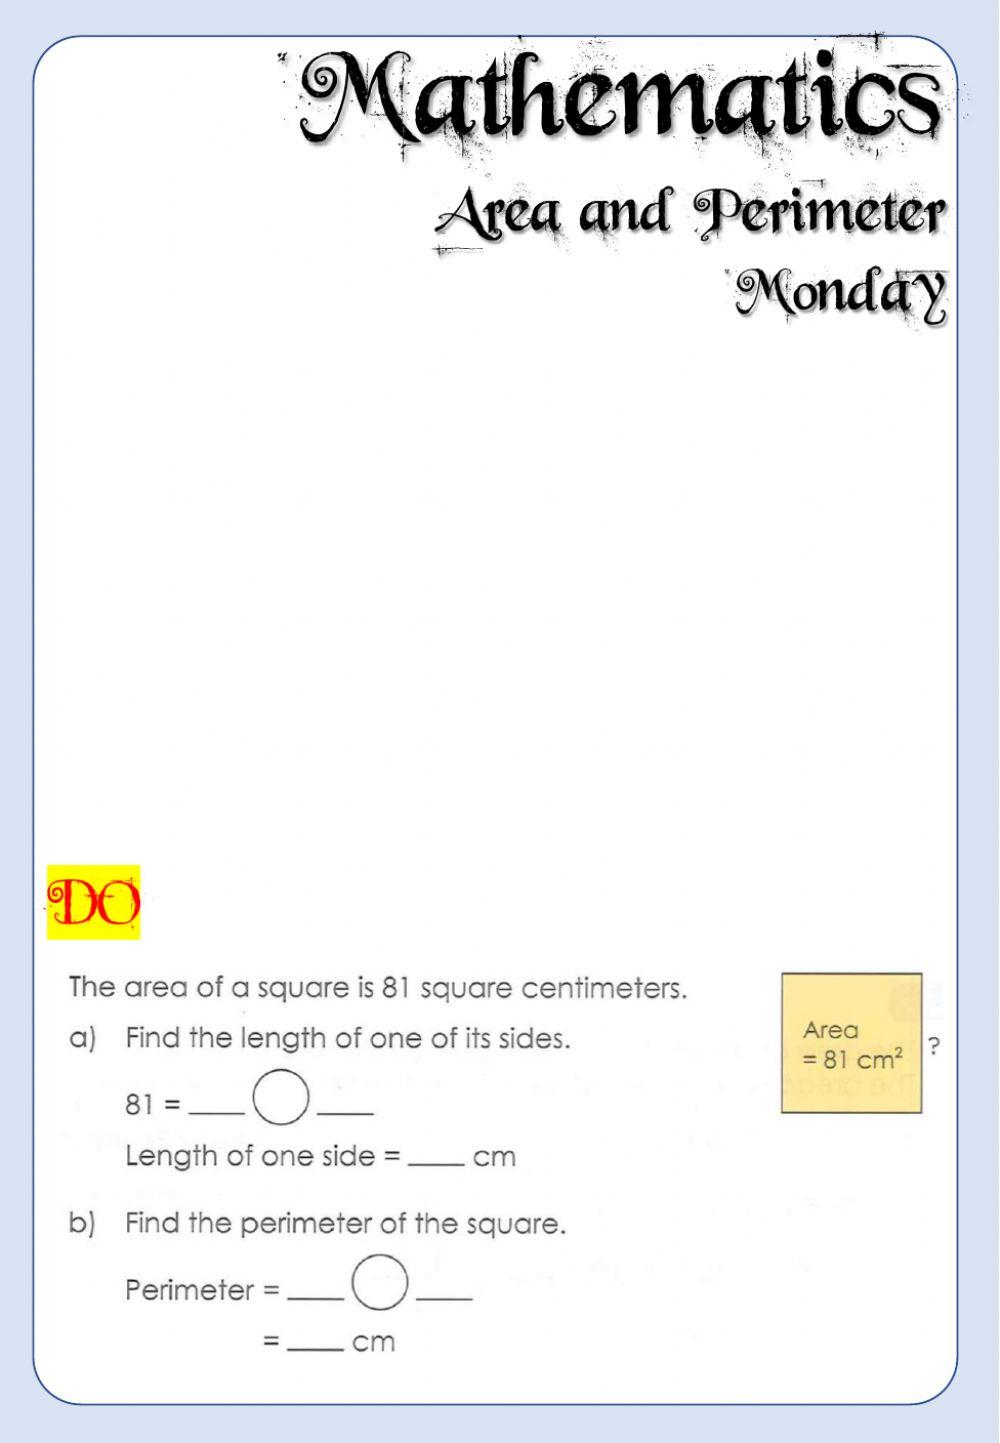 Week 23 - Mathematics - Monday 6